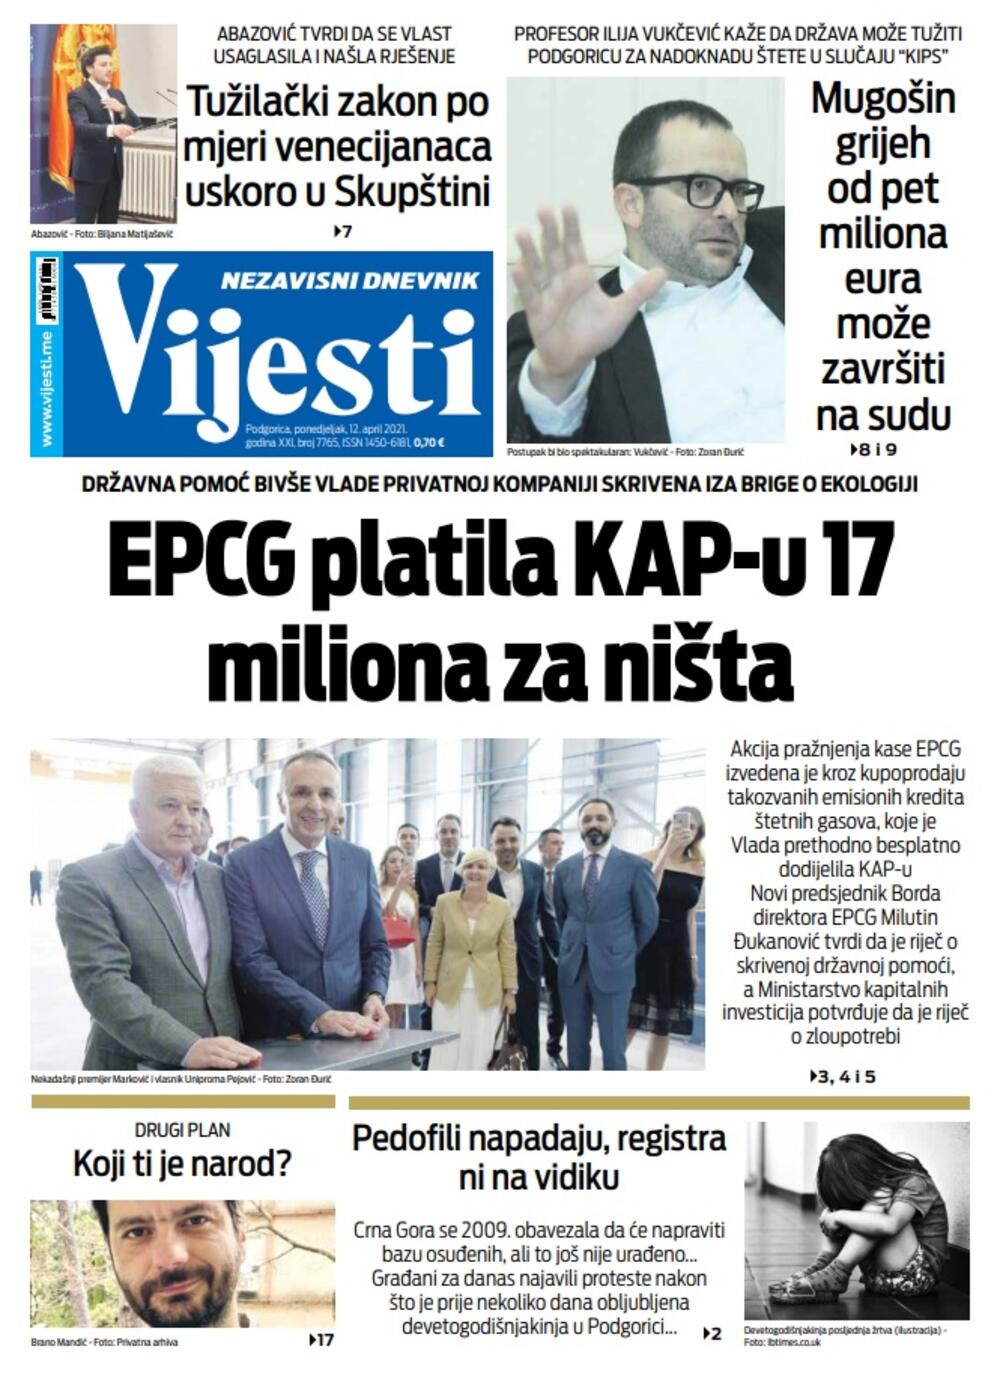 Naslovna strana "Vijesti" za ponedjeljak 12. april 2021. godine, Foto: Vijesti